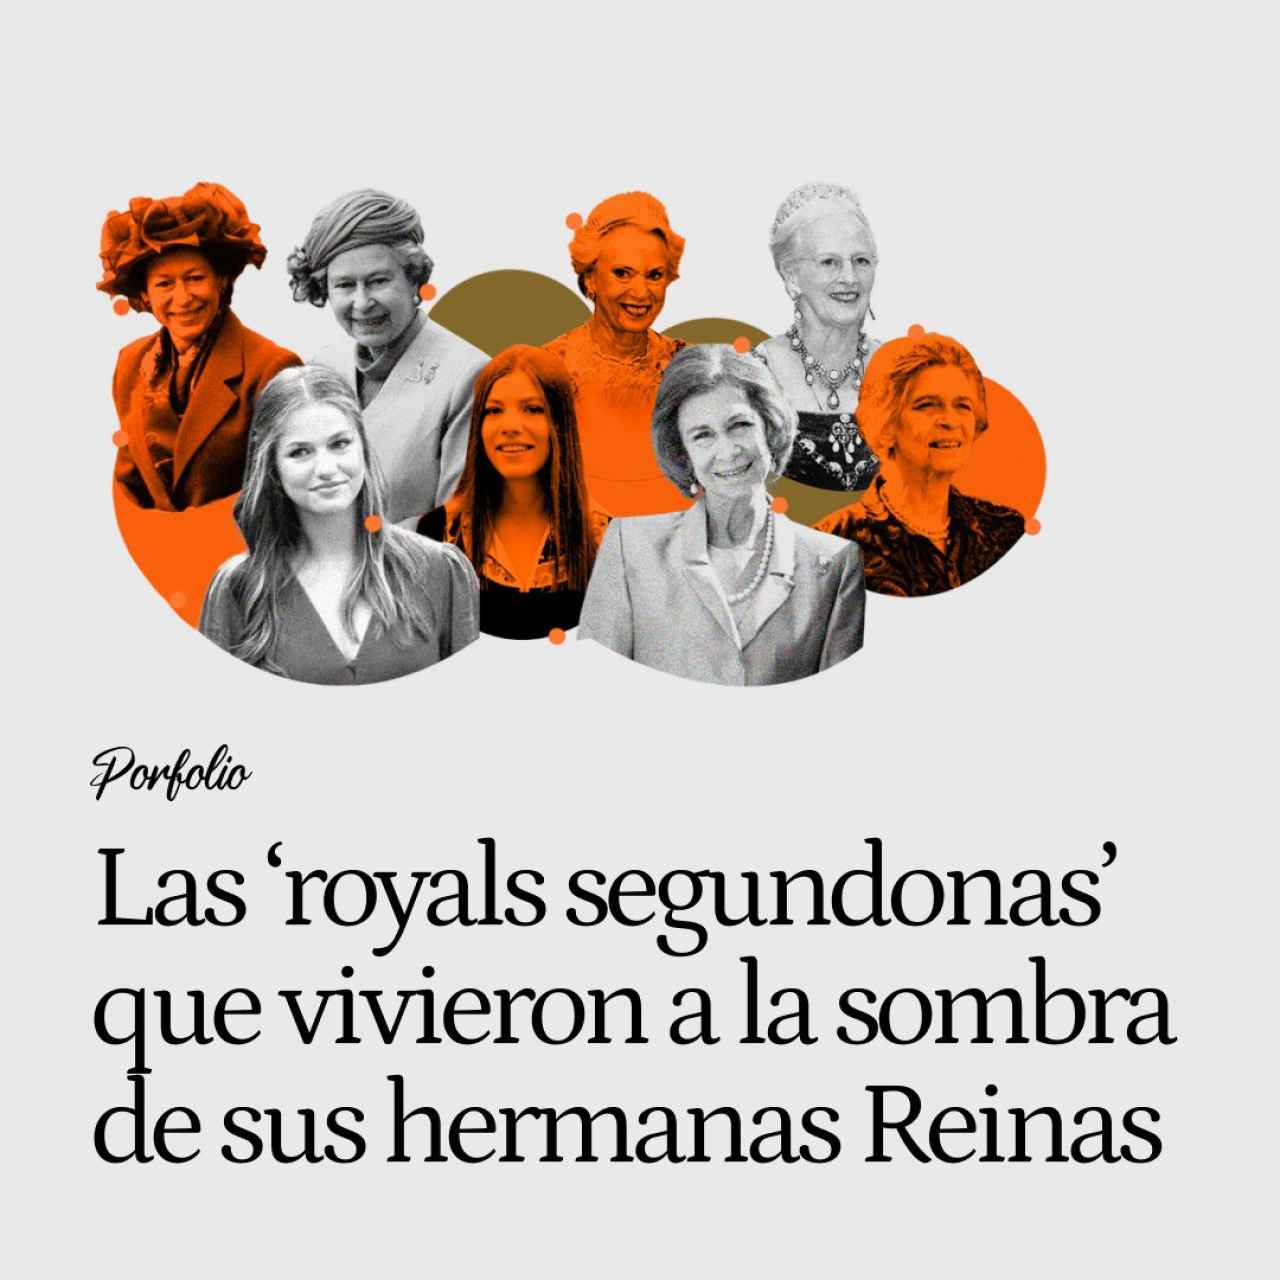 Irene, Margarita y Benedicta: cuando las hermanas de las Reinas europeas se convierten en 'royals segundonas'